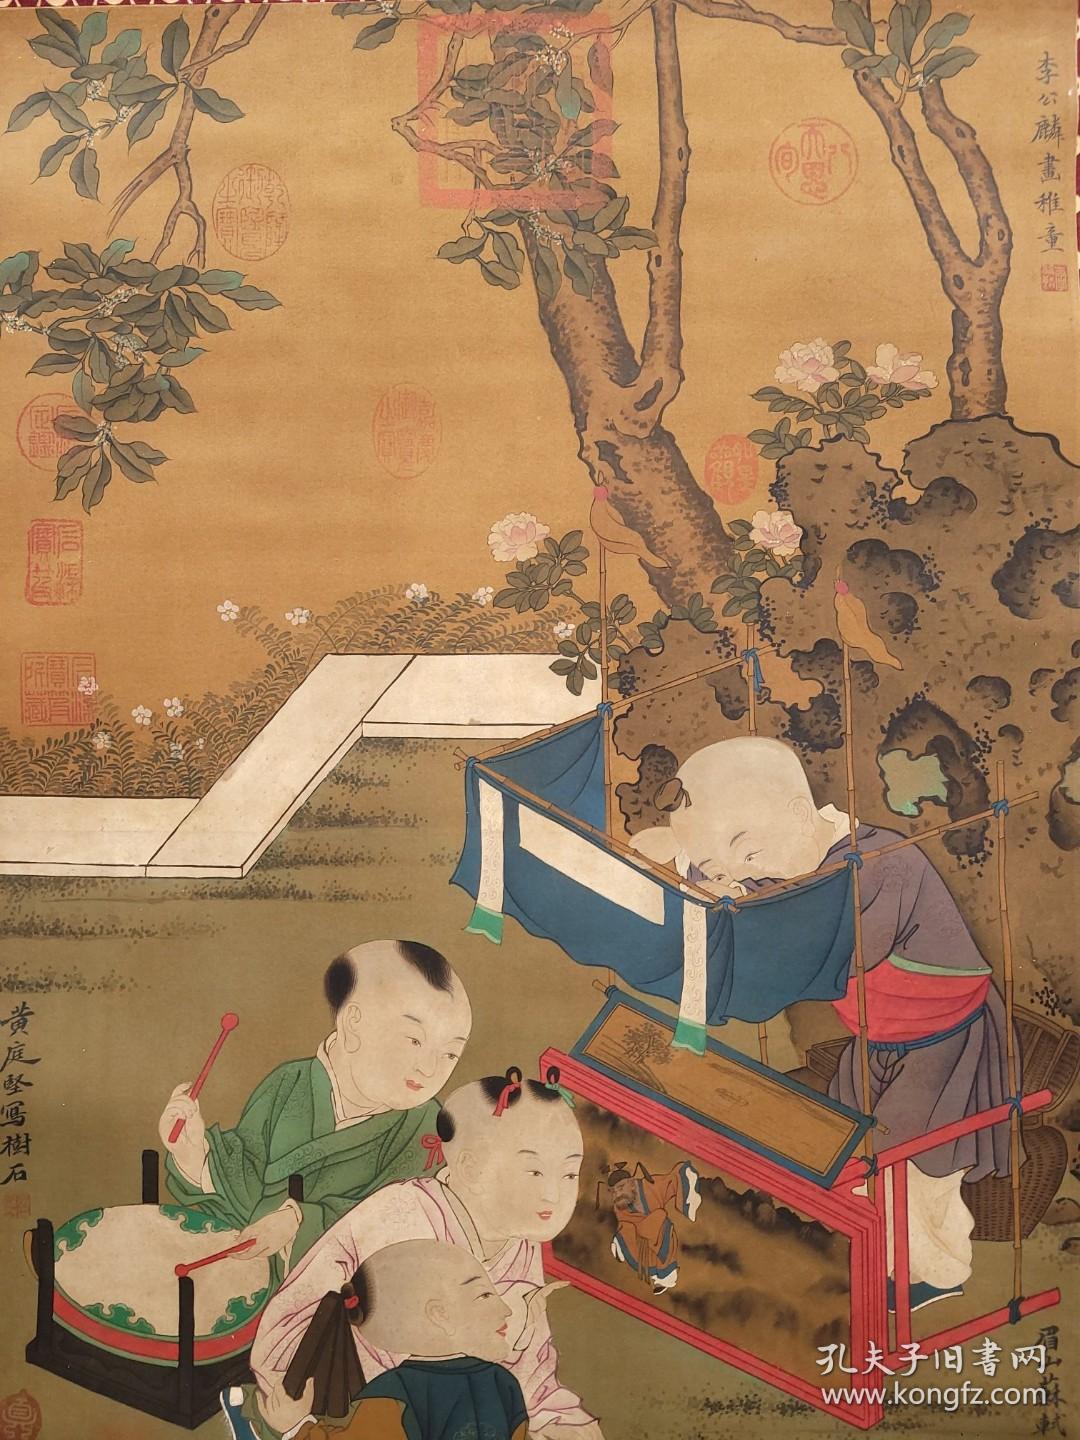 旧藏 宋代 李公麟、黄庭坚、苏轼合作 画心尺寸48x75.5厘米